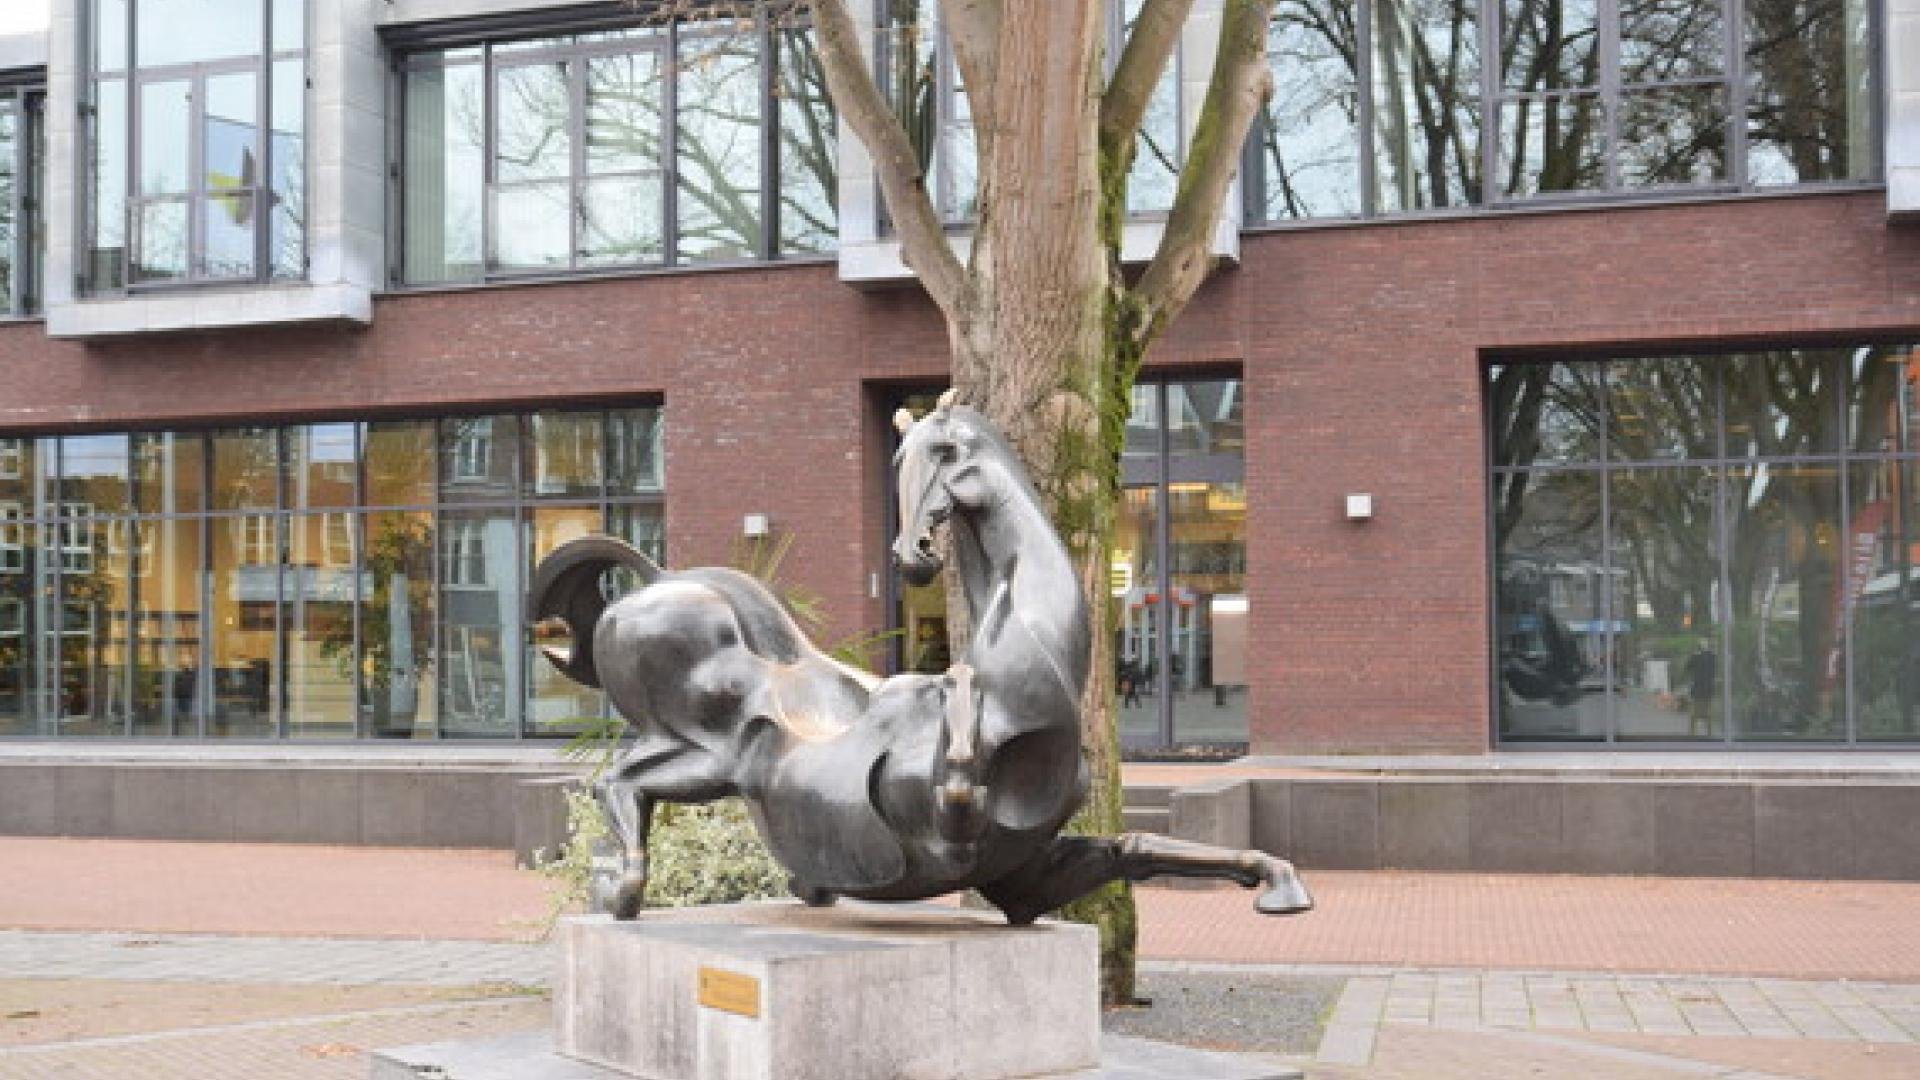 Entree gemeentehuis met op voorgrond een beeld van een dravend paard